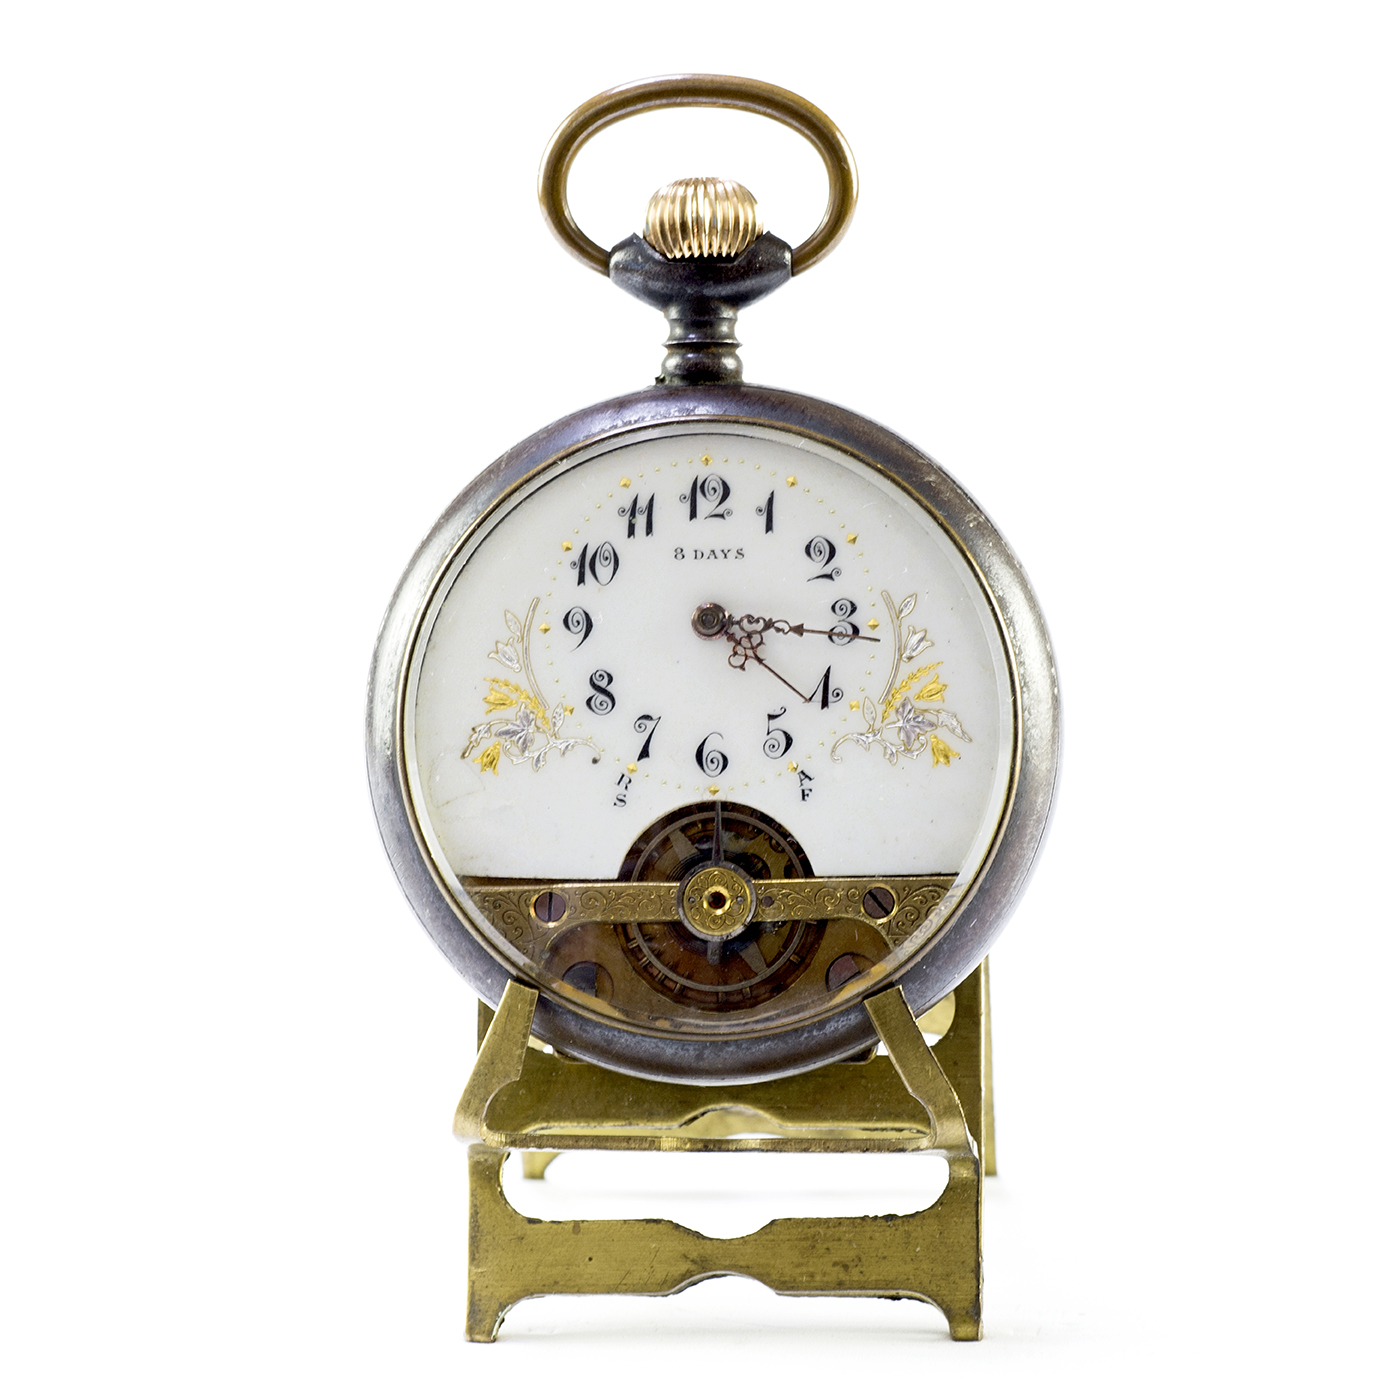 HEBDOMAS. Reloj de Bolsillo, Lepine, remontoir, Ocho días Cuerda. Suiza, ca. 1900